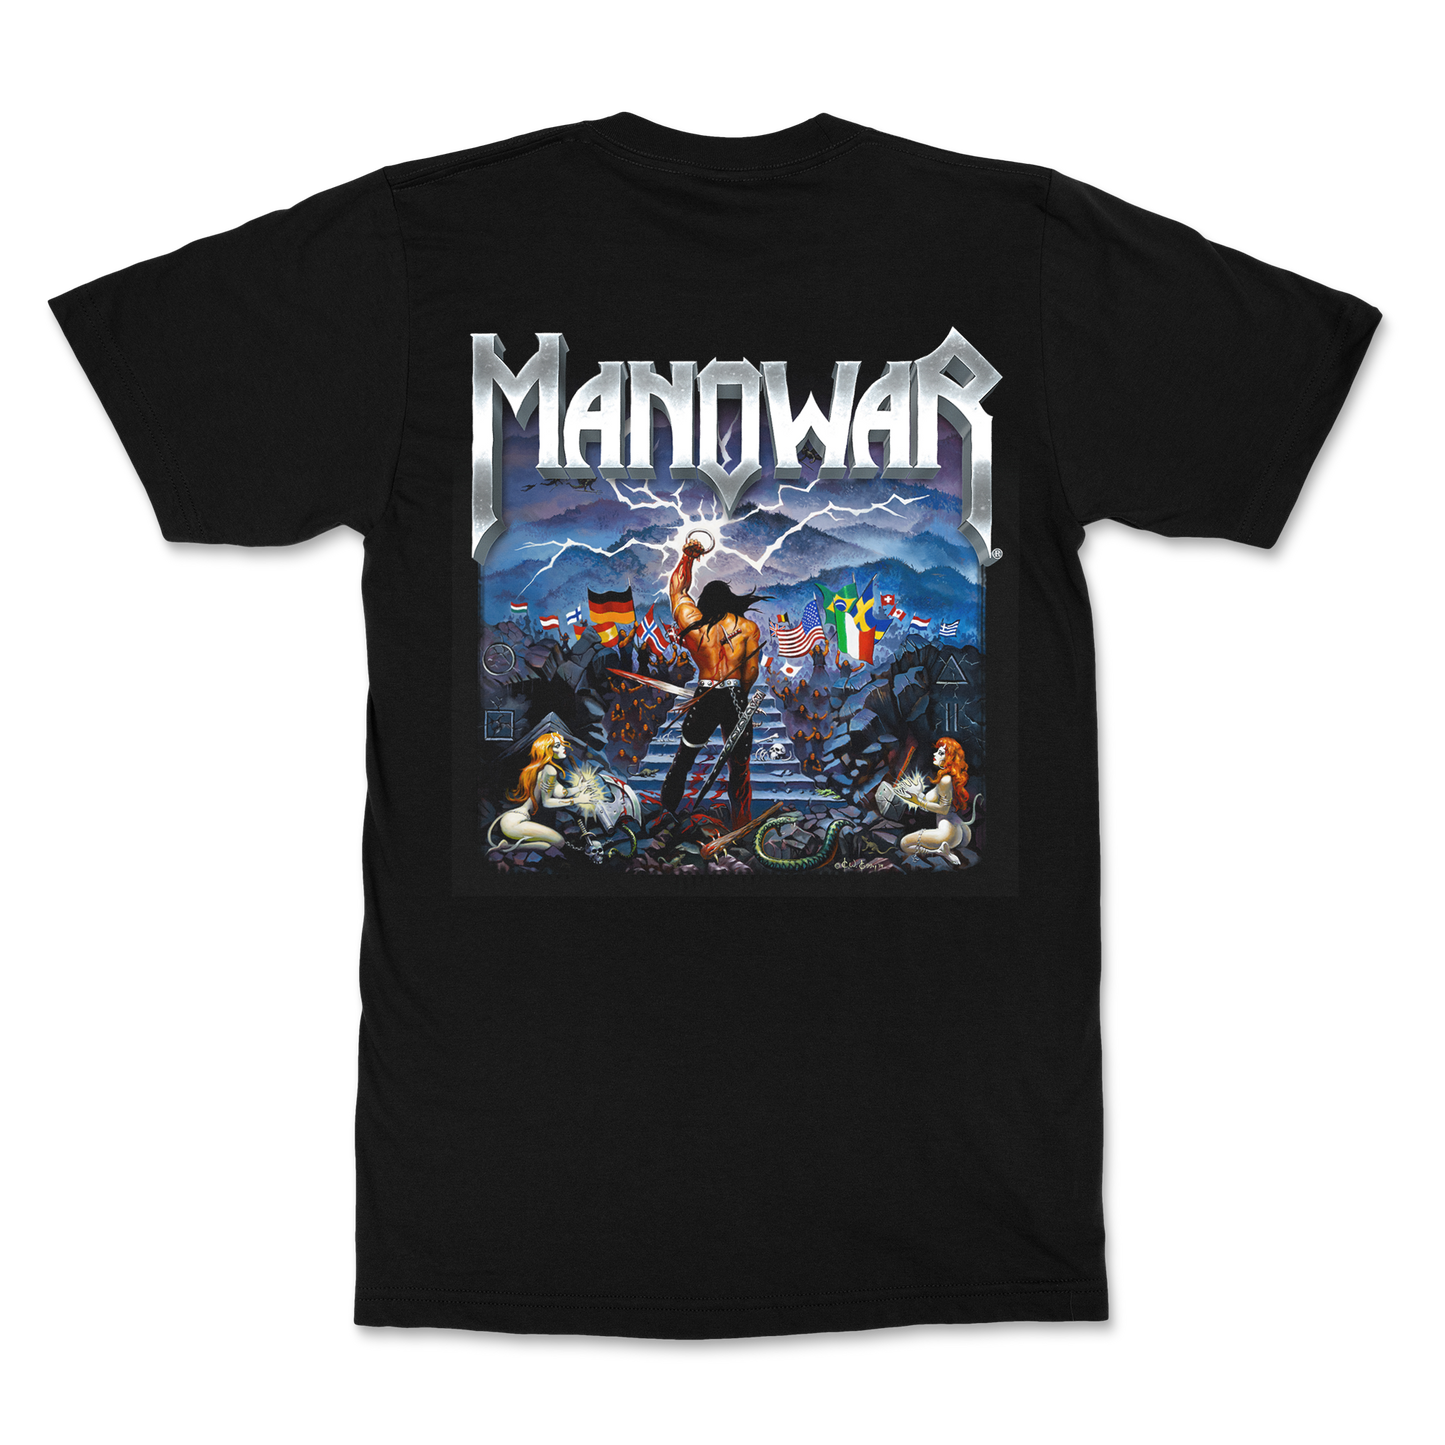 Manowar T-Shirt Kings Of Metal MMXIV 2014 (Legacy)